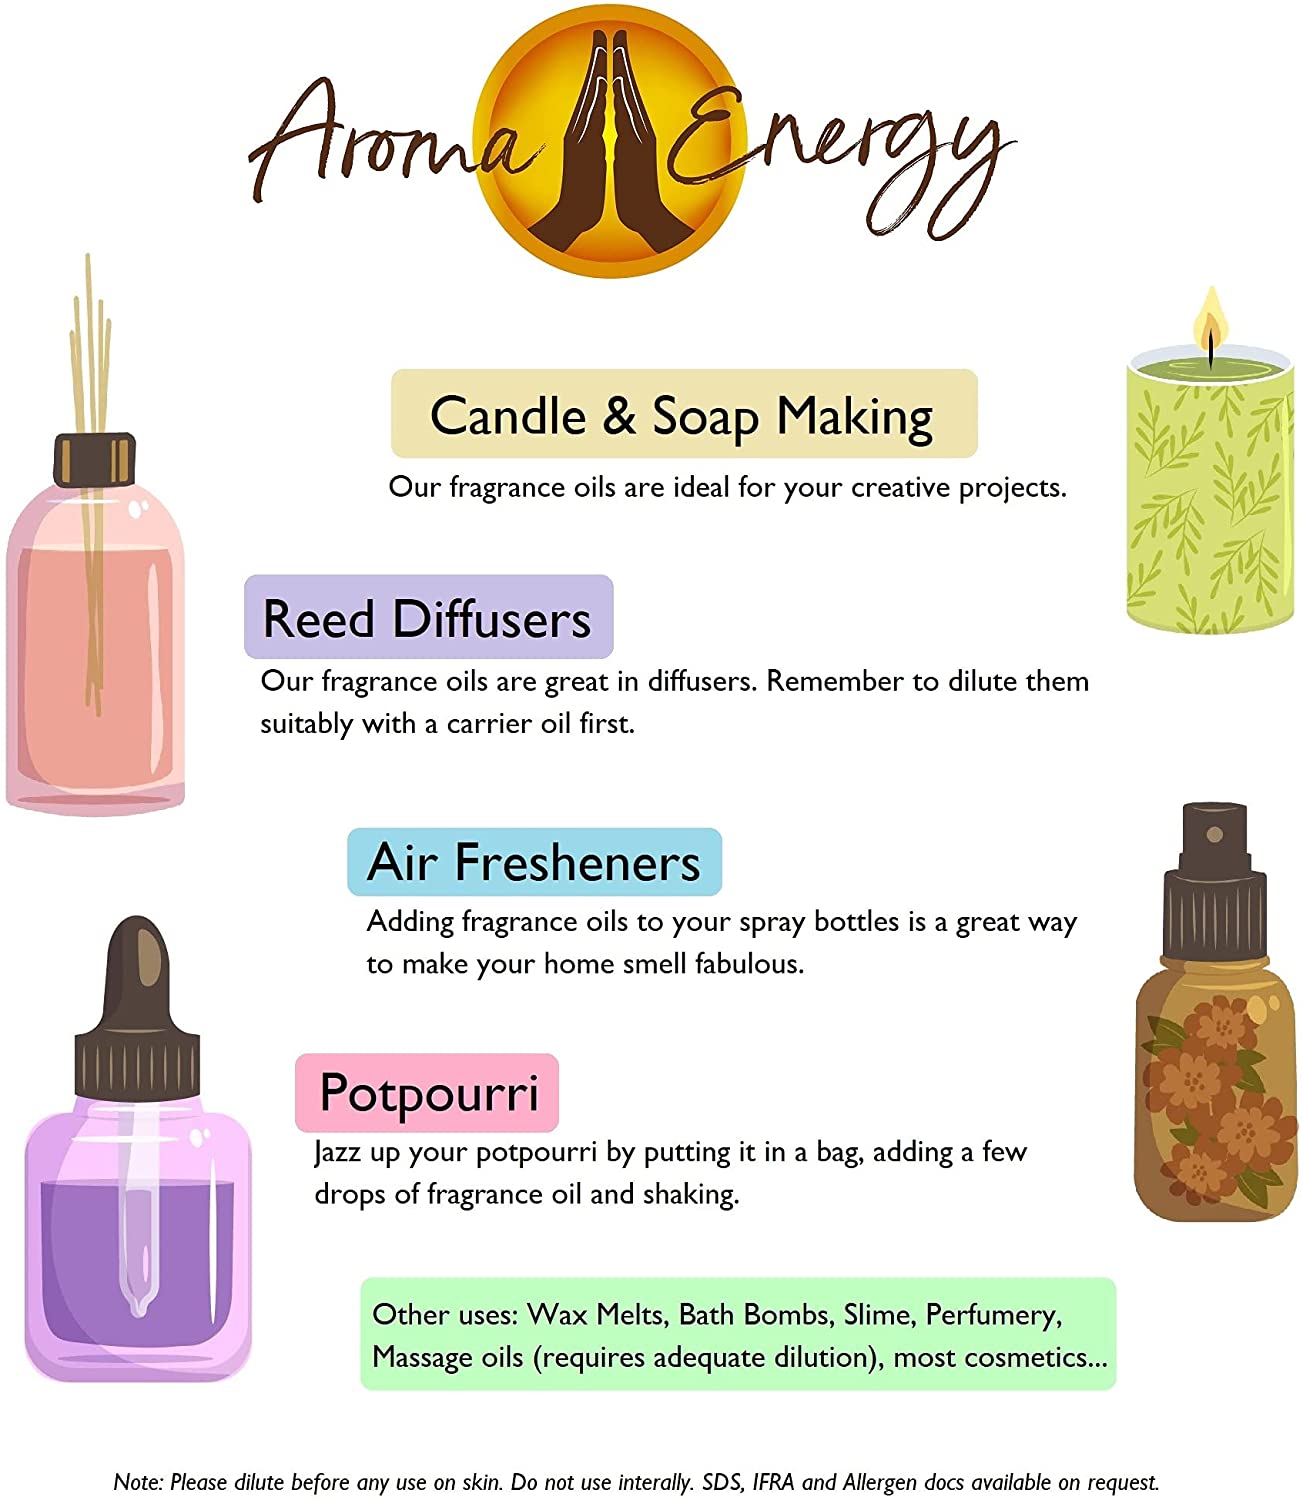 Pixie Dust Fragrance Oil | Fairy Dust - Aroma Energy